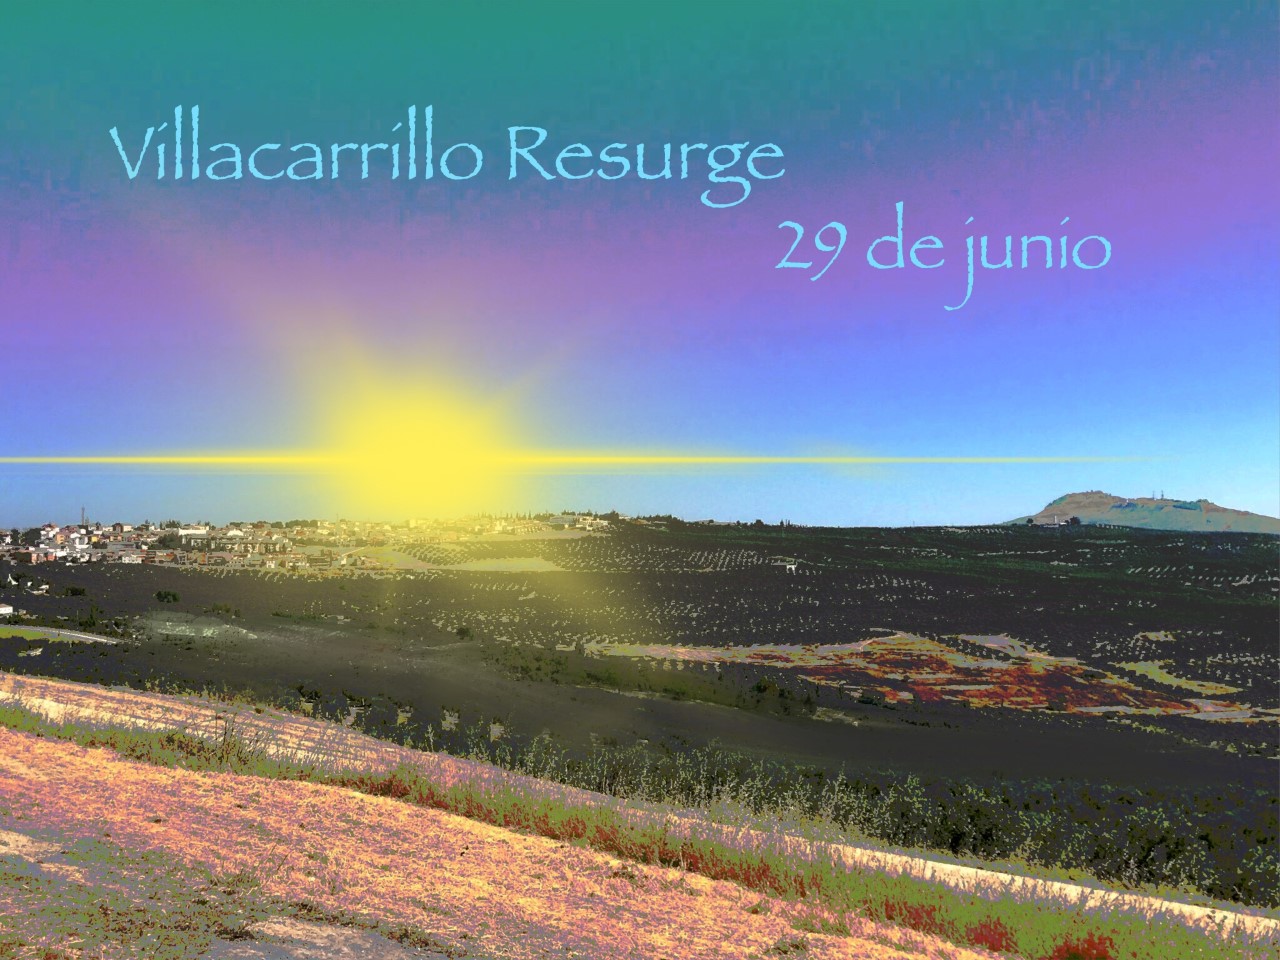 Villacarrillo resurgirá el 29 de junio